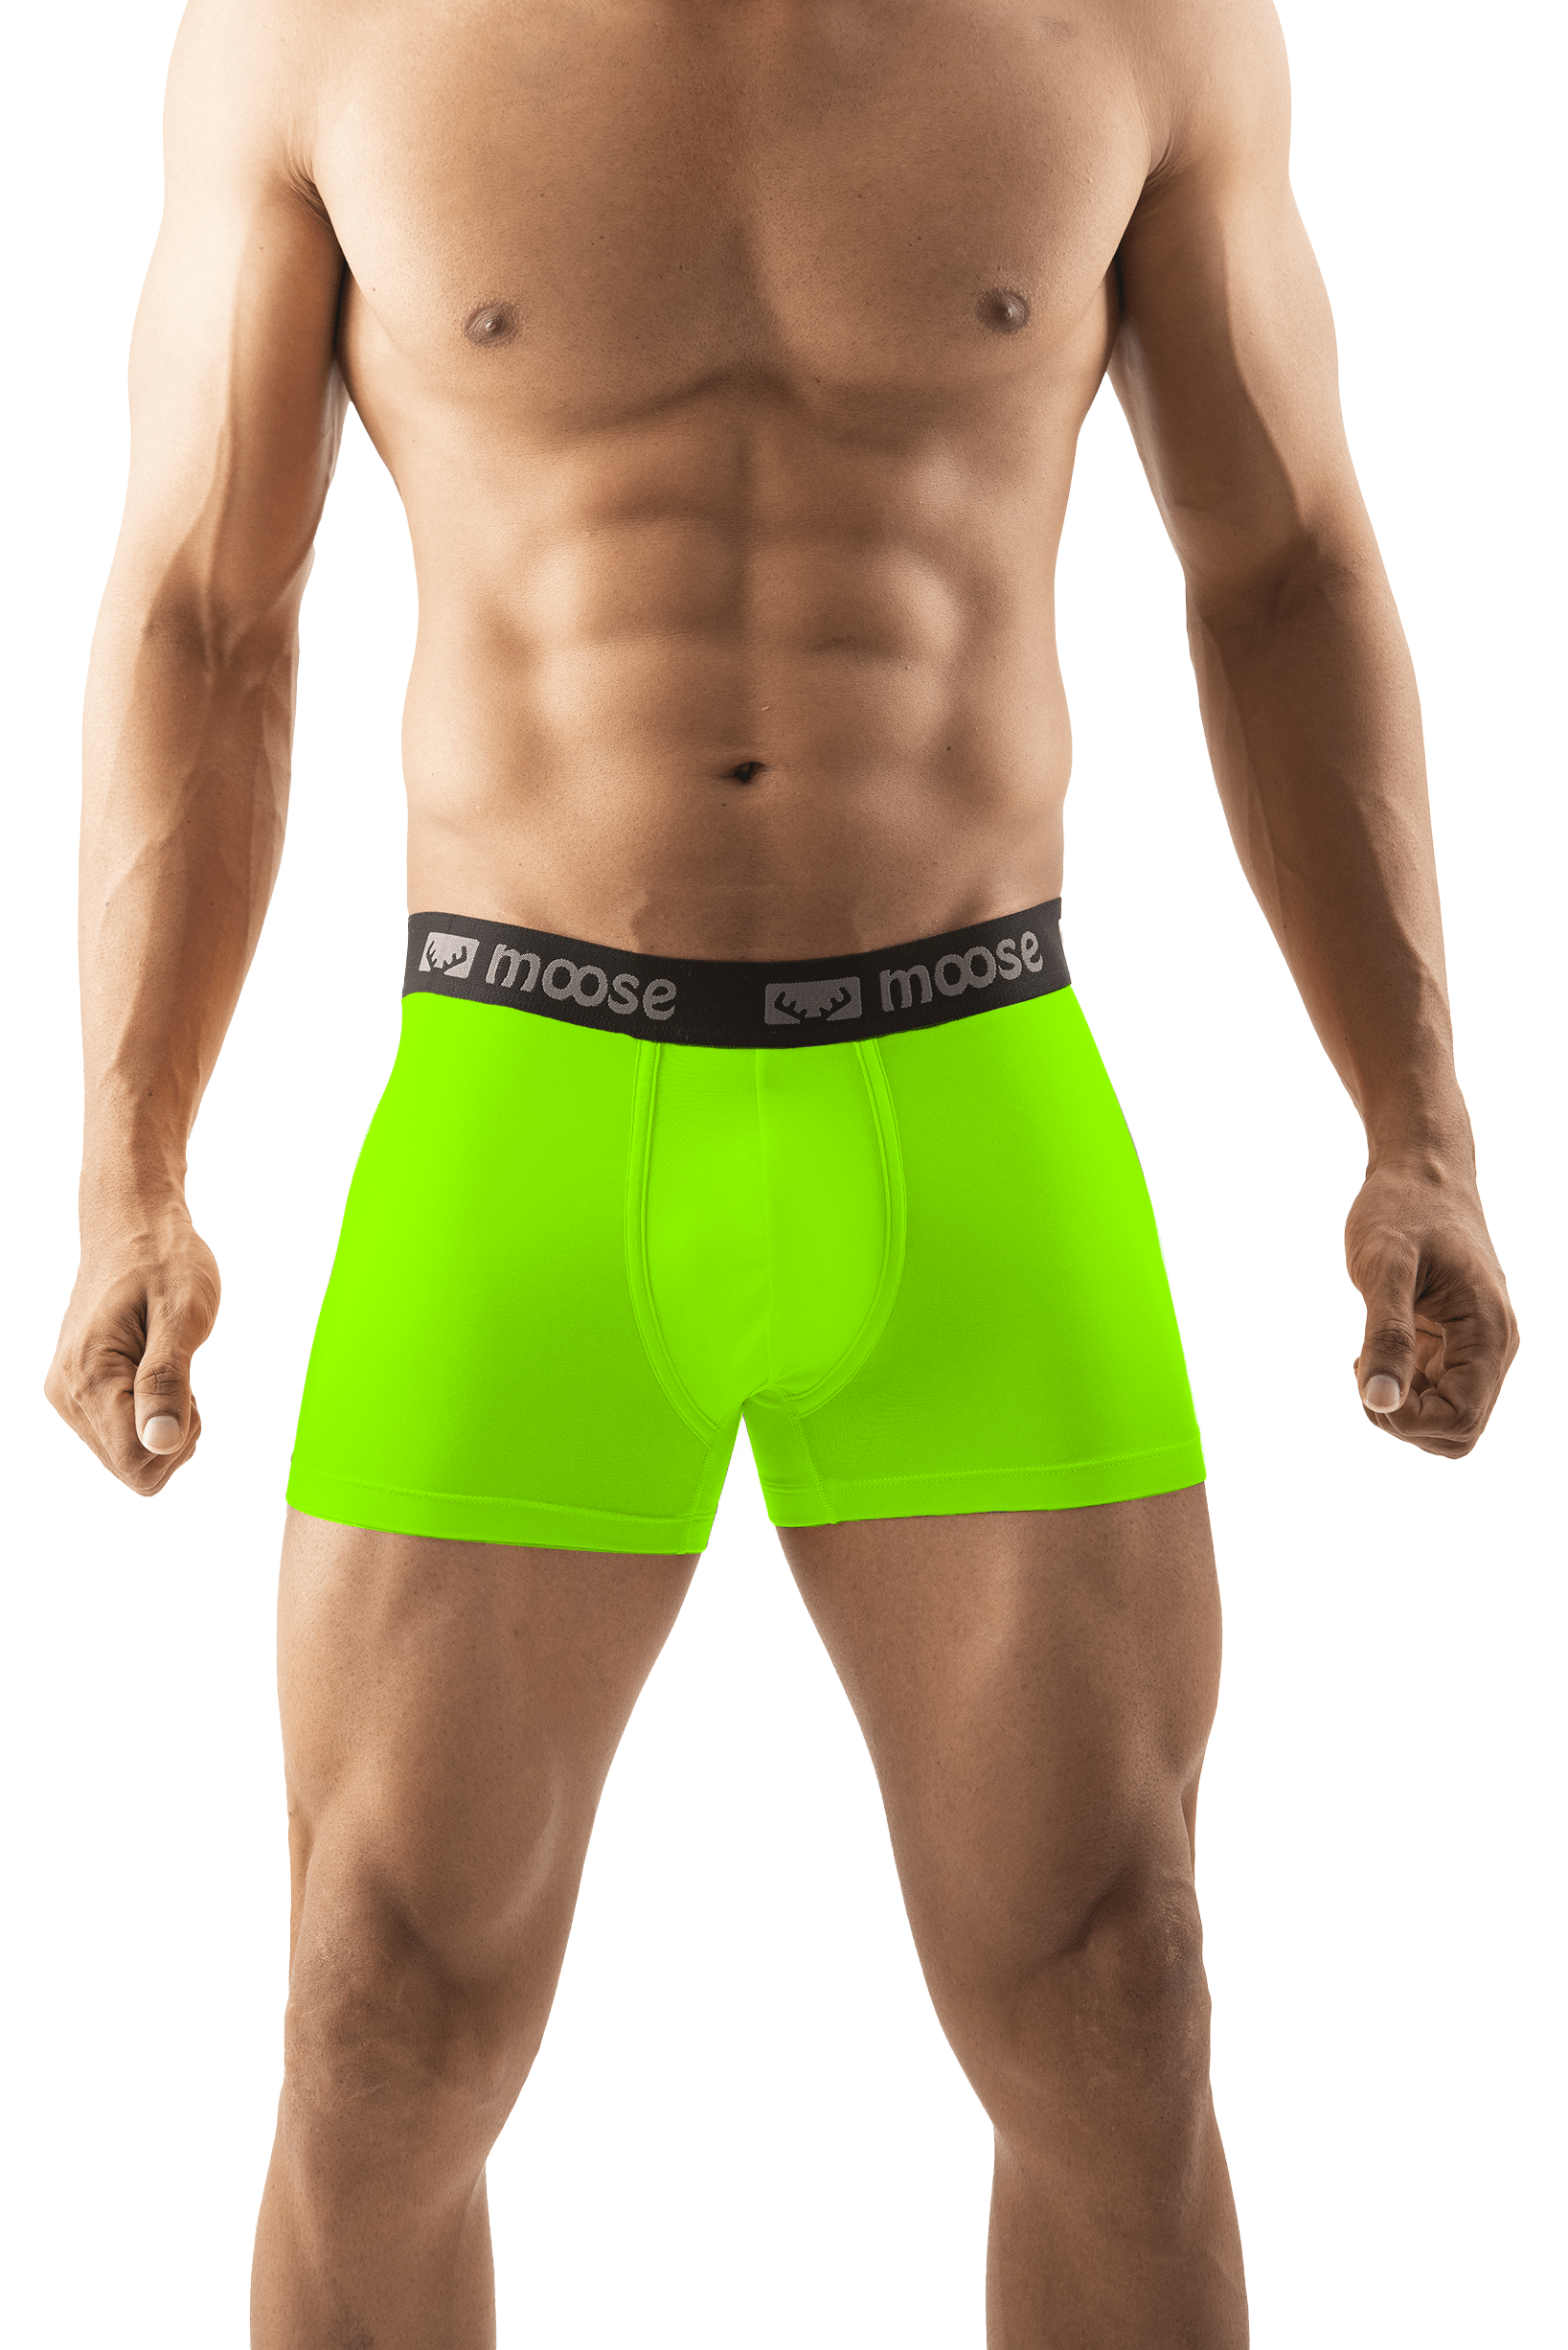 AKTIV NRG Brief Underwear - Green